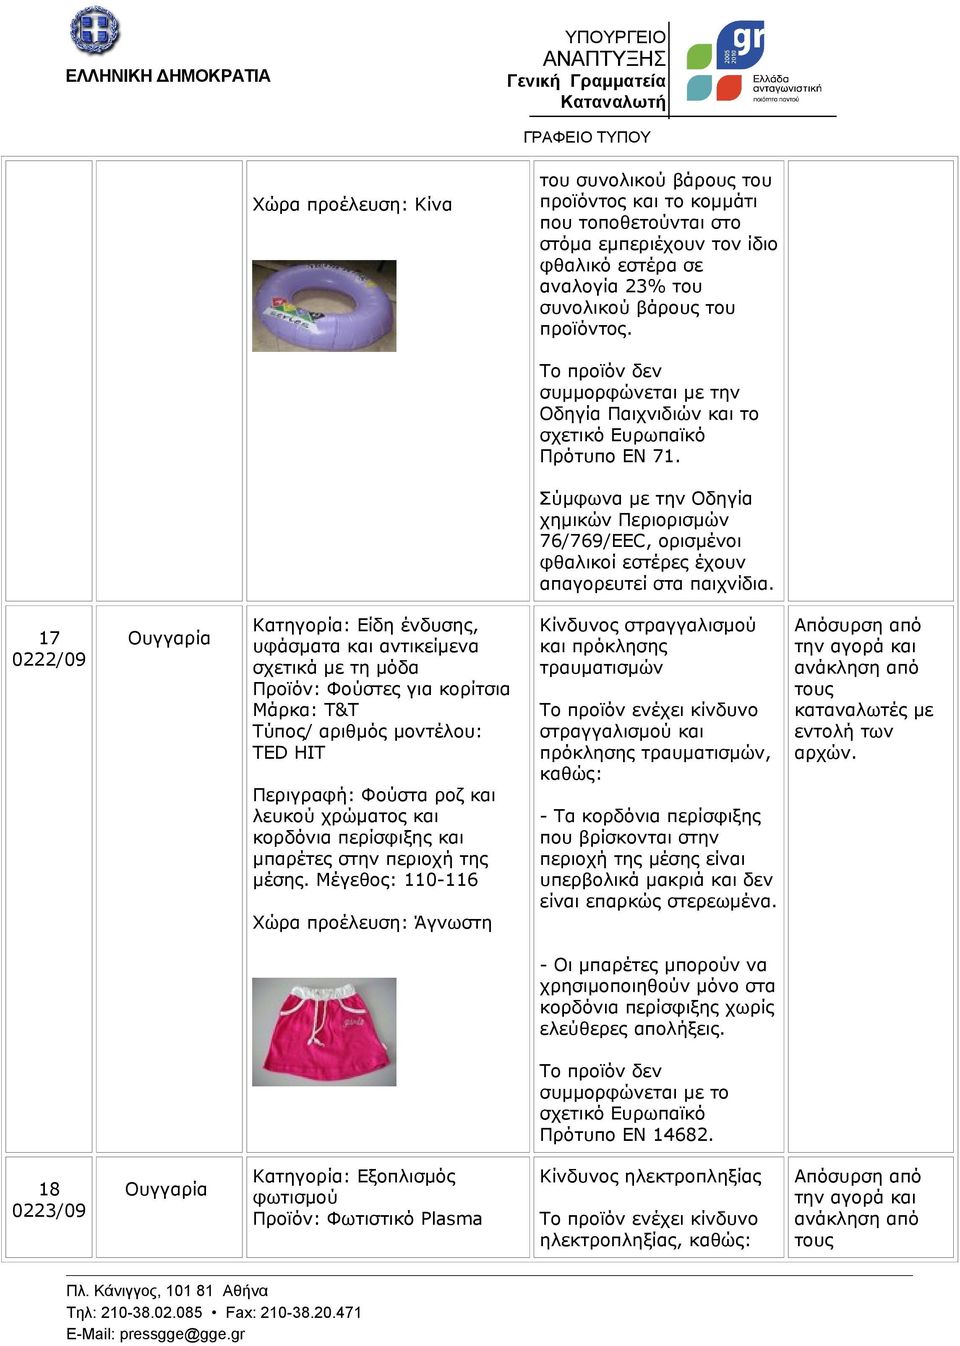 17 0222/09 Ουγγαρία Κατηγορία: Είδη ένδυσης, υφάσματα και αντικείμενα σχετικά με τη μόδα Προϊόν: Φούστες για κορίτσια Μάρκα: T&T TED HIT Περιγραφή: Φούστα ροζ και λευκού χρώματος και κορδόνια